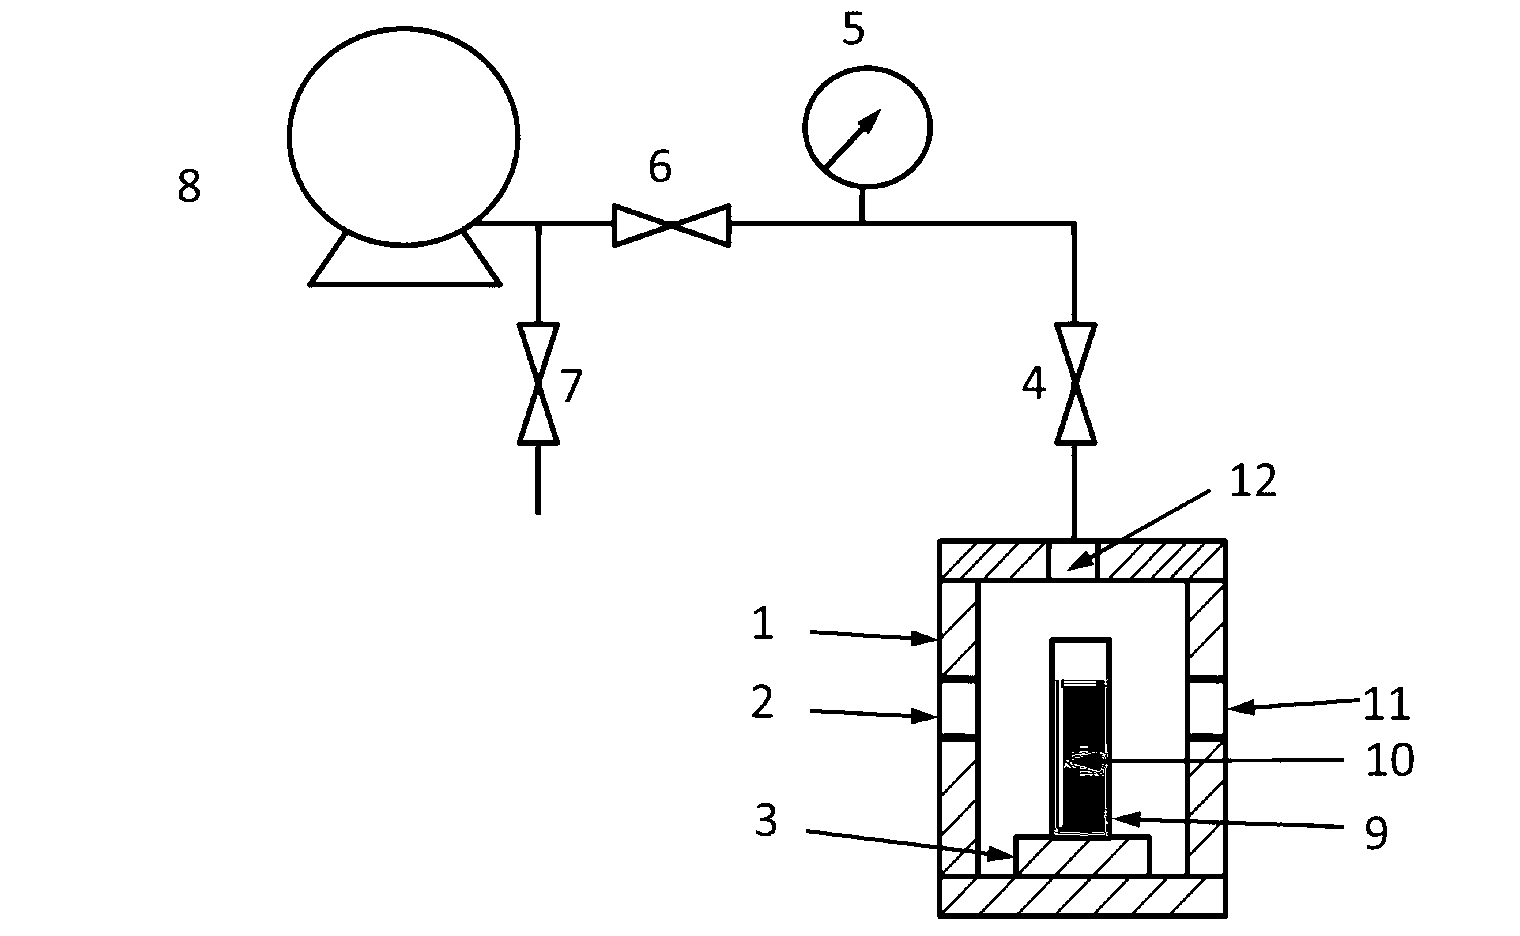 Pneumatic-control optical limiter